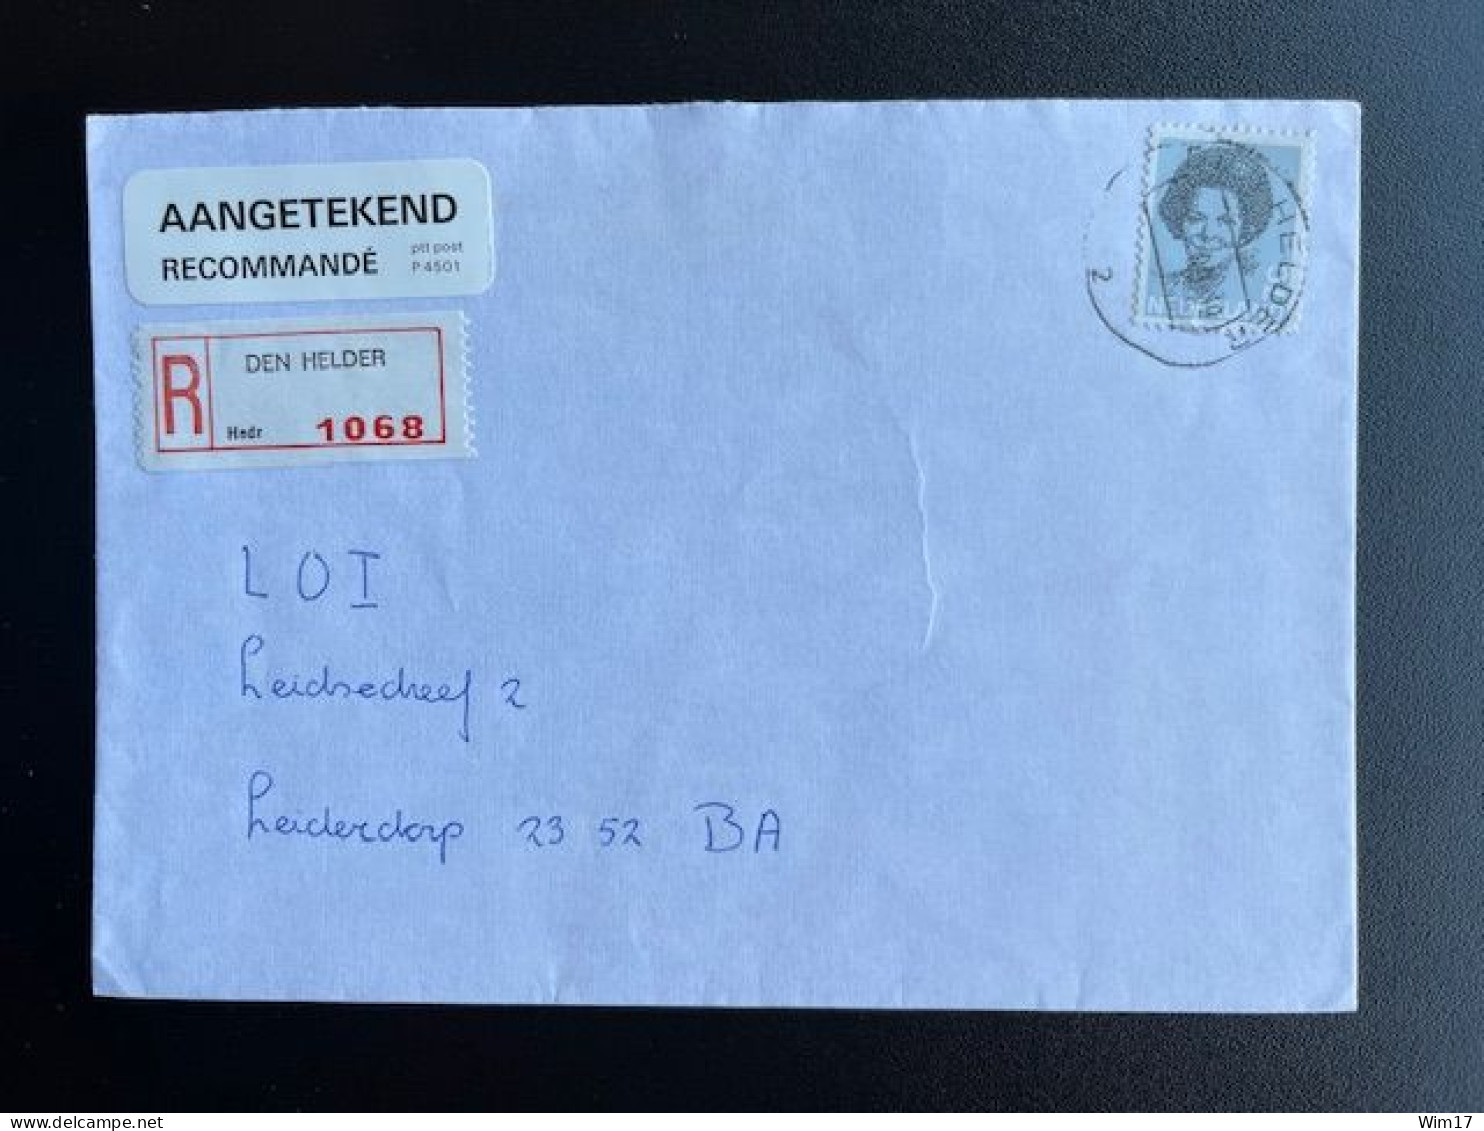 NETHERLANDS 1989 REGISTERED LETTER DEN HELDER TO LEIDERDORP NEDERLAND AANGETEKEND - Covers & Documents